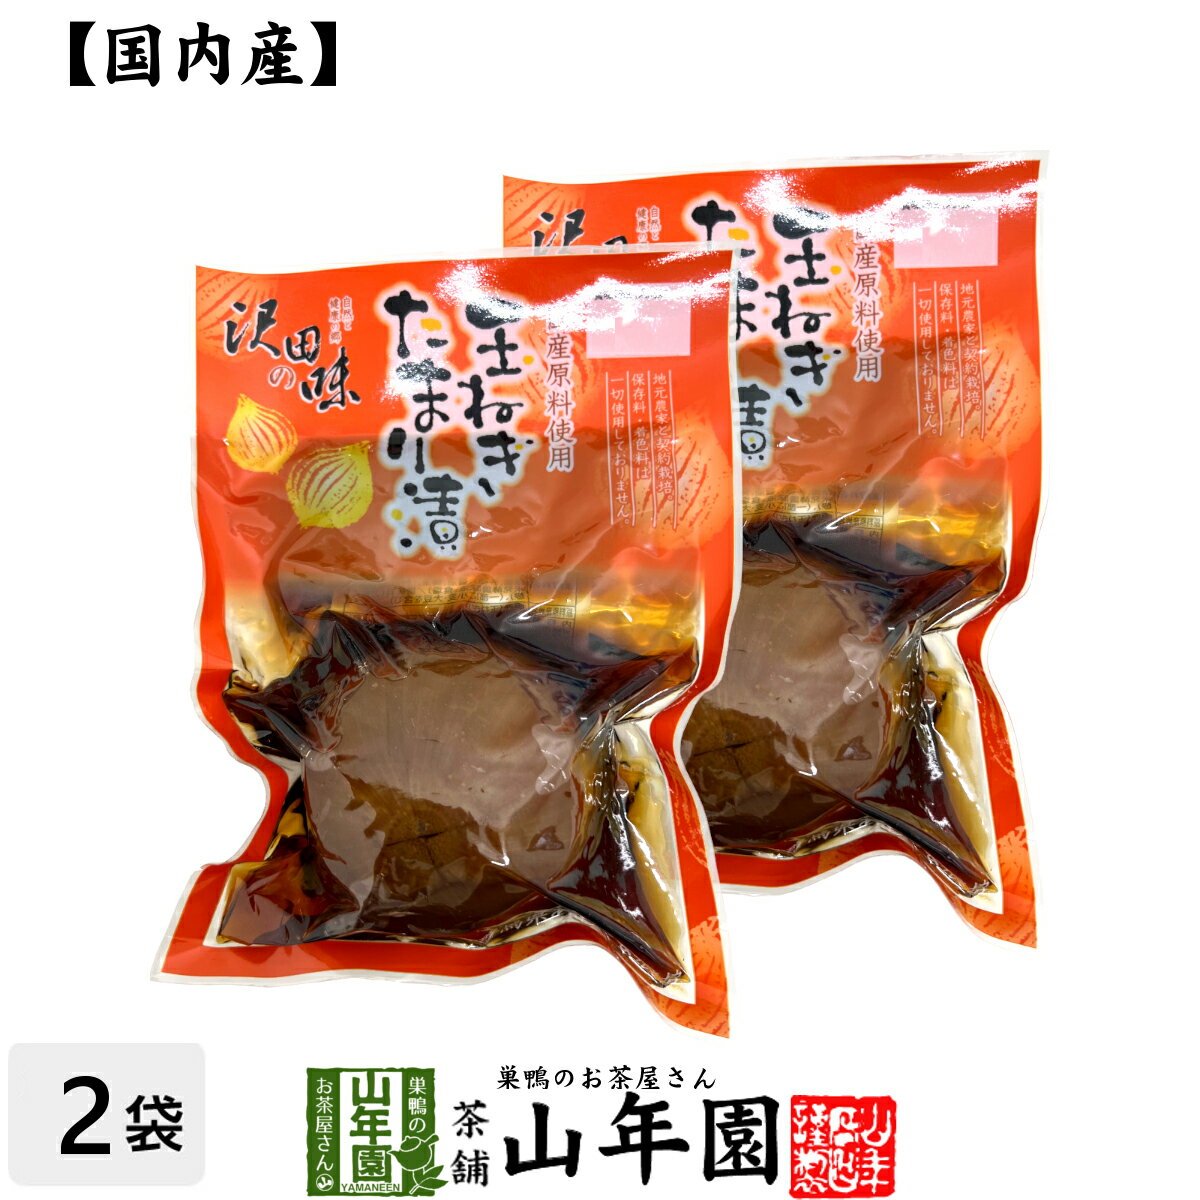 【国産原料使用】沢田の味 玉ねぎ たまり漬 1個×2袋セット